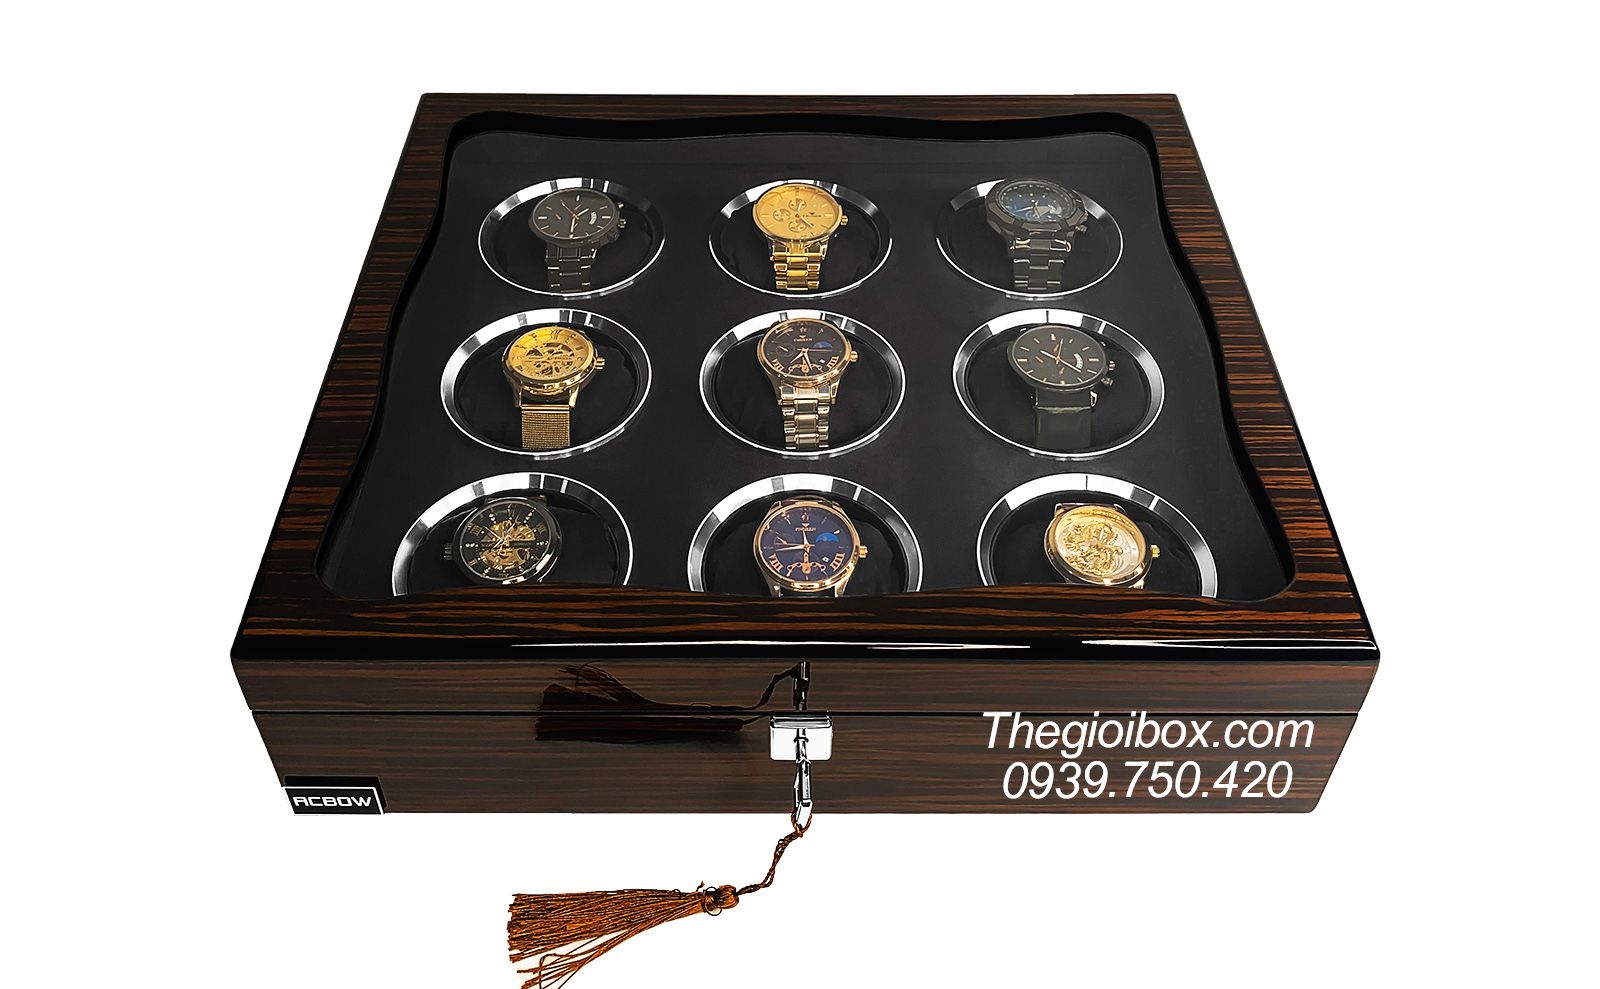 Hộp đựng trưng bày đồng hồ ACBOW 9 ngăn vỏ gỗ Piano màu Ebony cao cấp nhỏ gọn